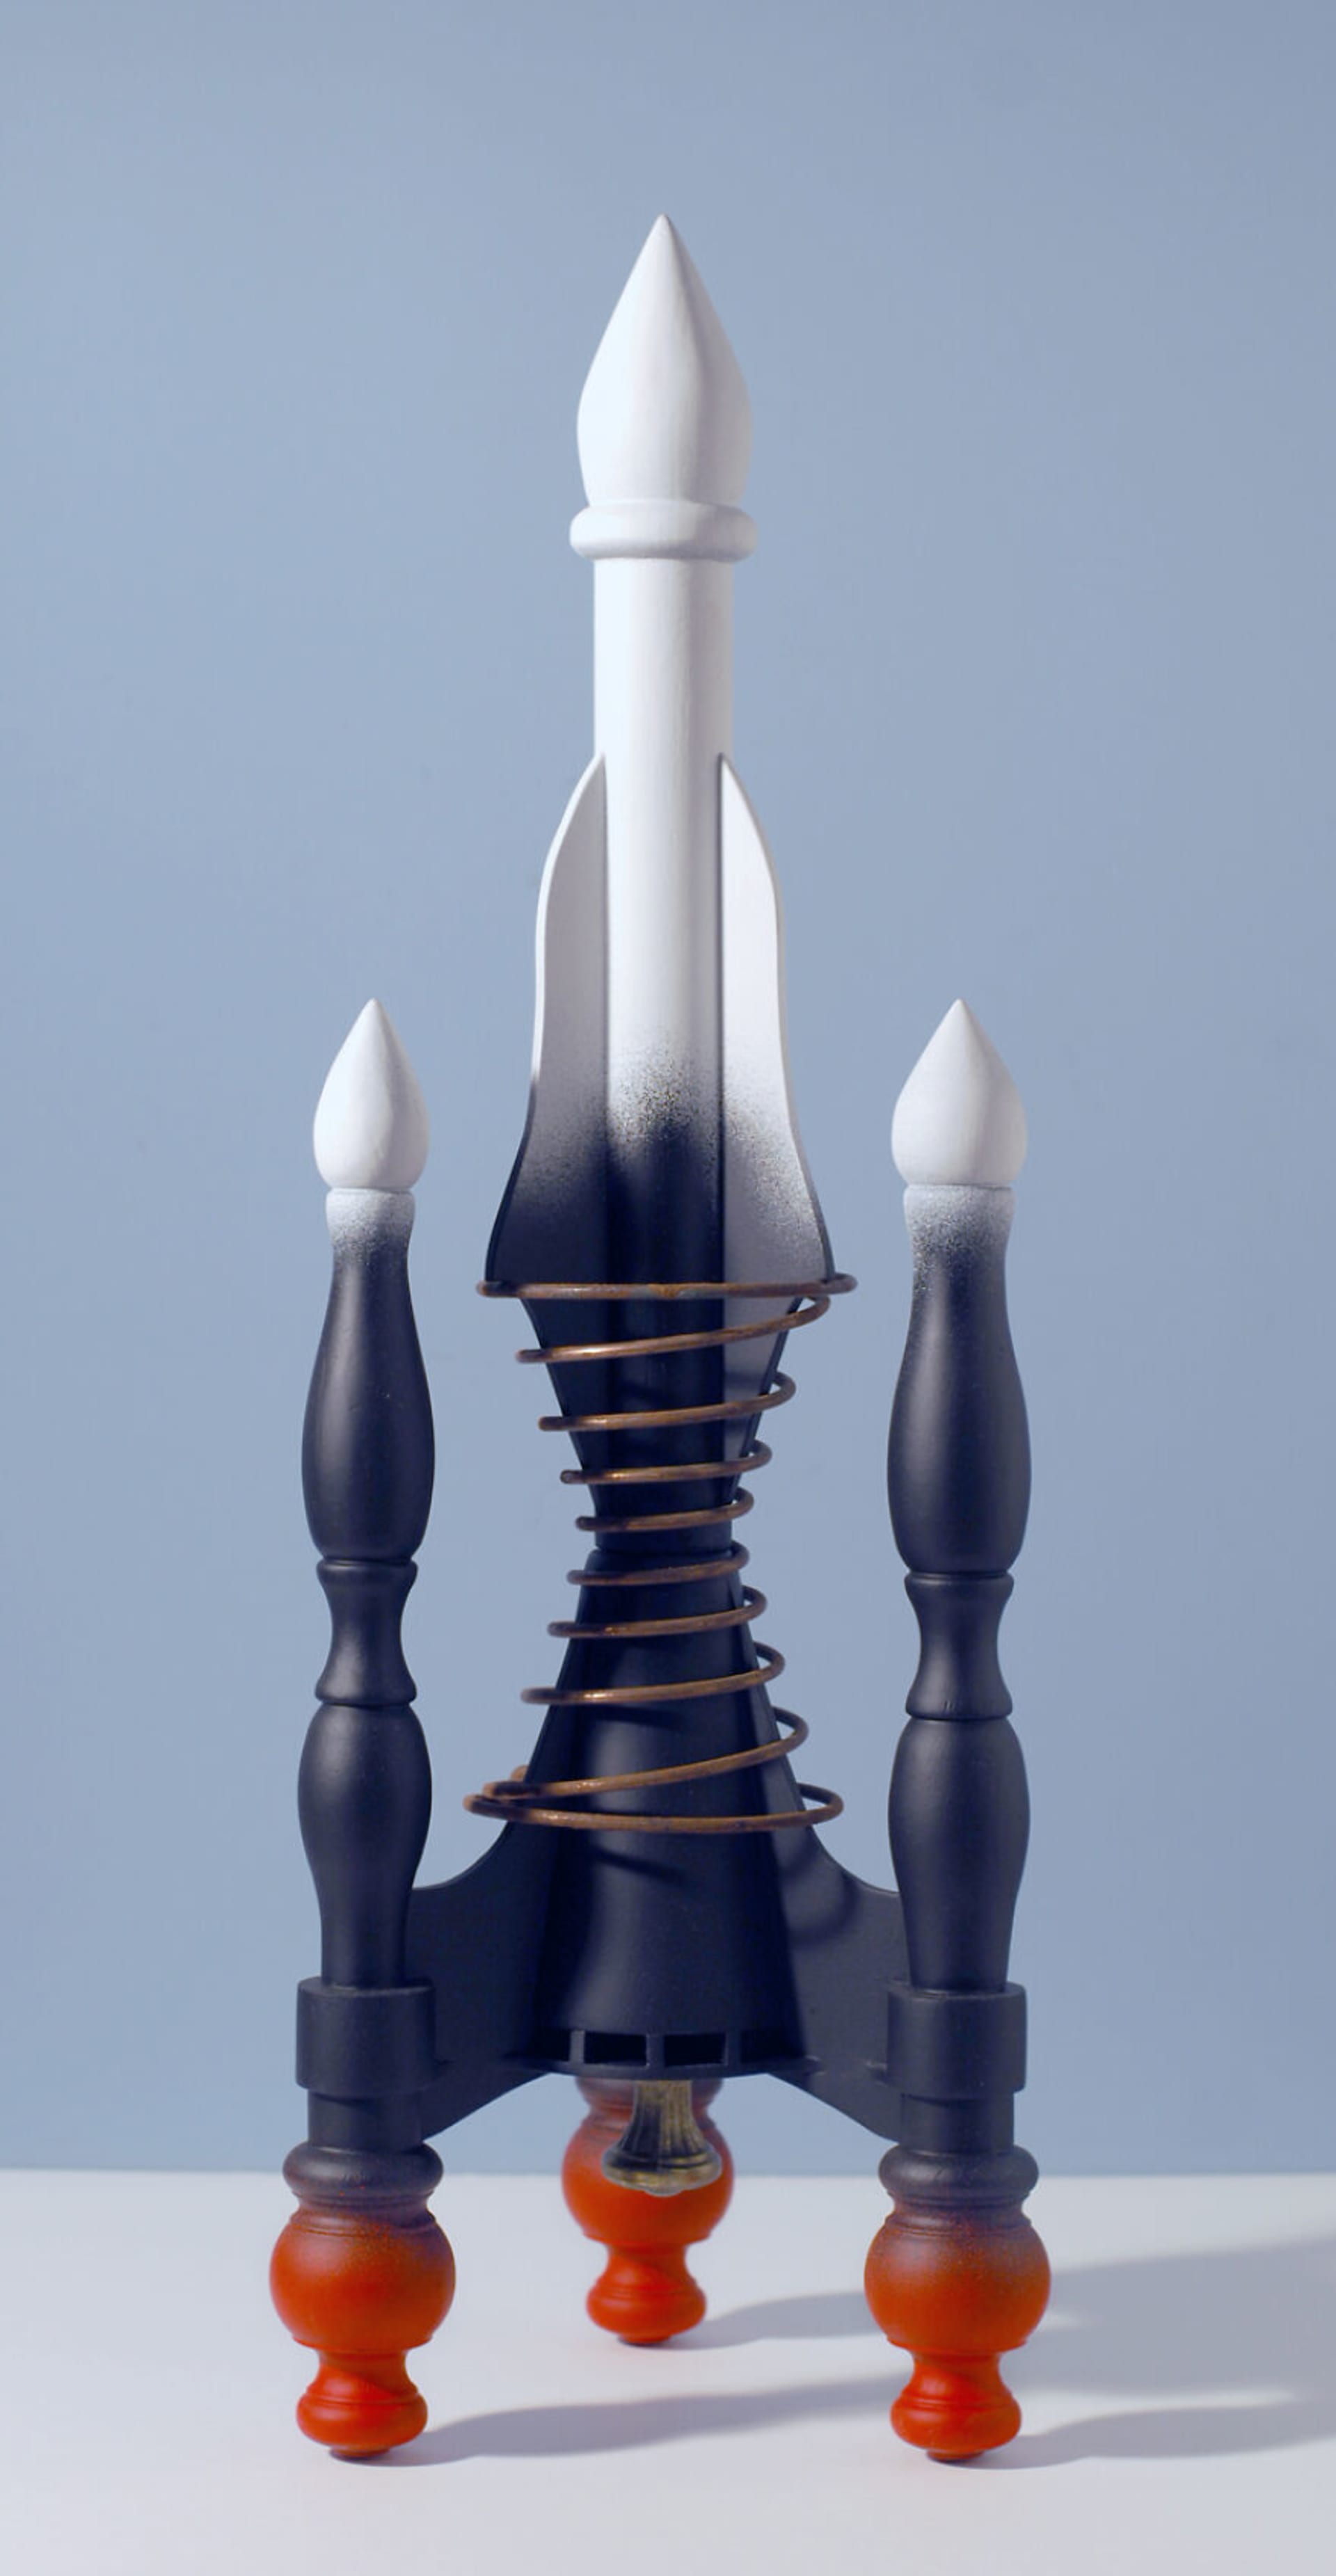 Designér používá k výrobě raket nechtěný nábytek